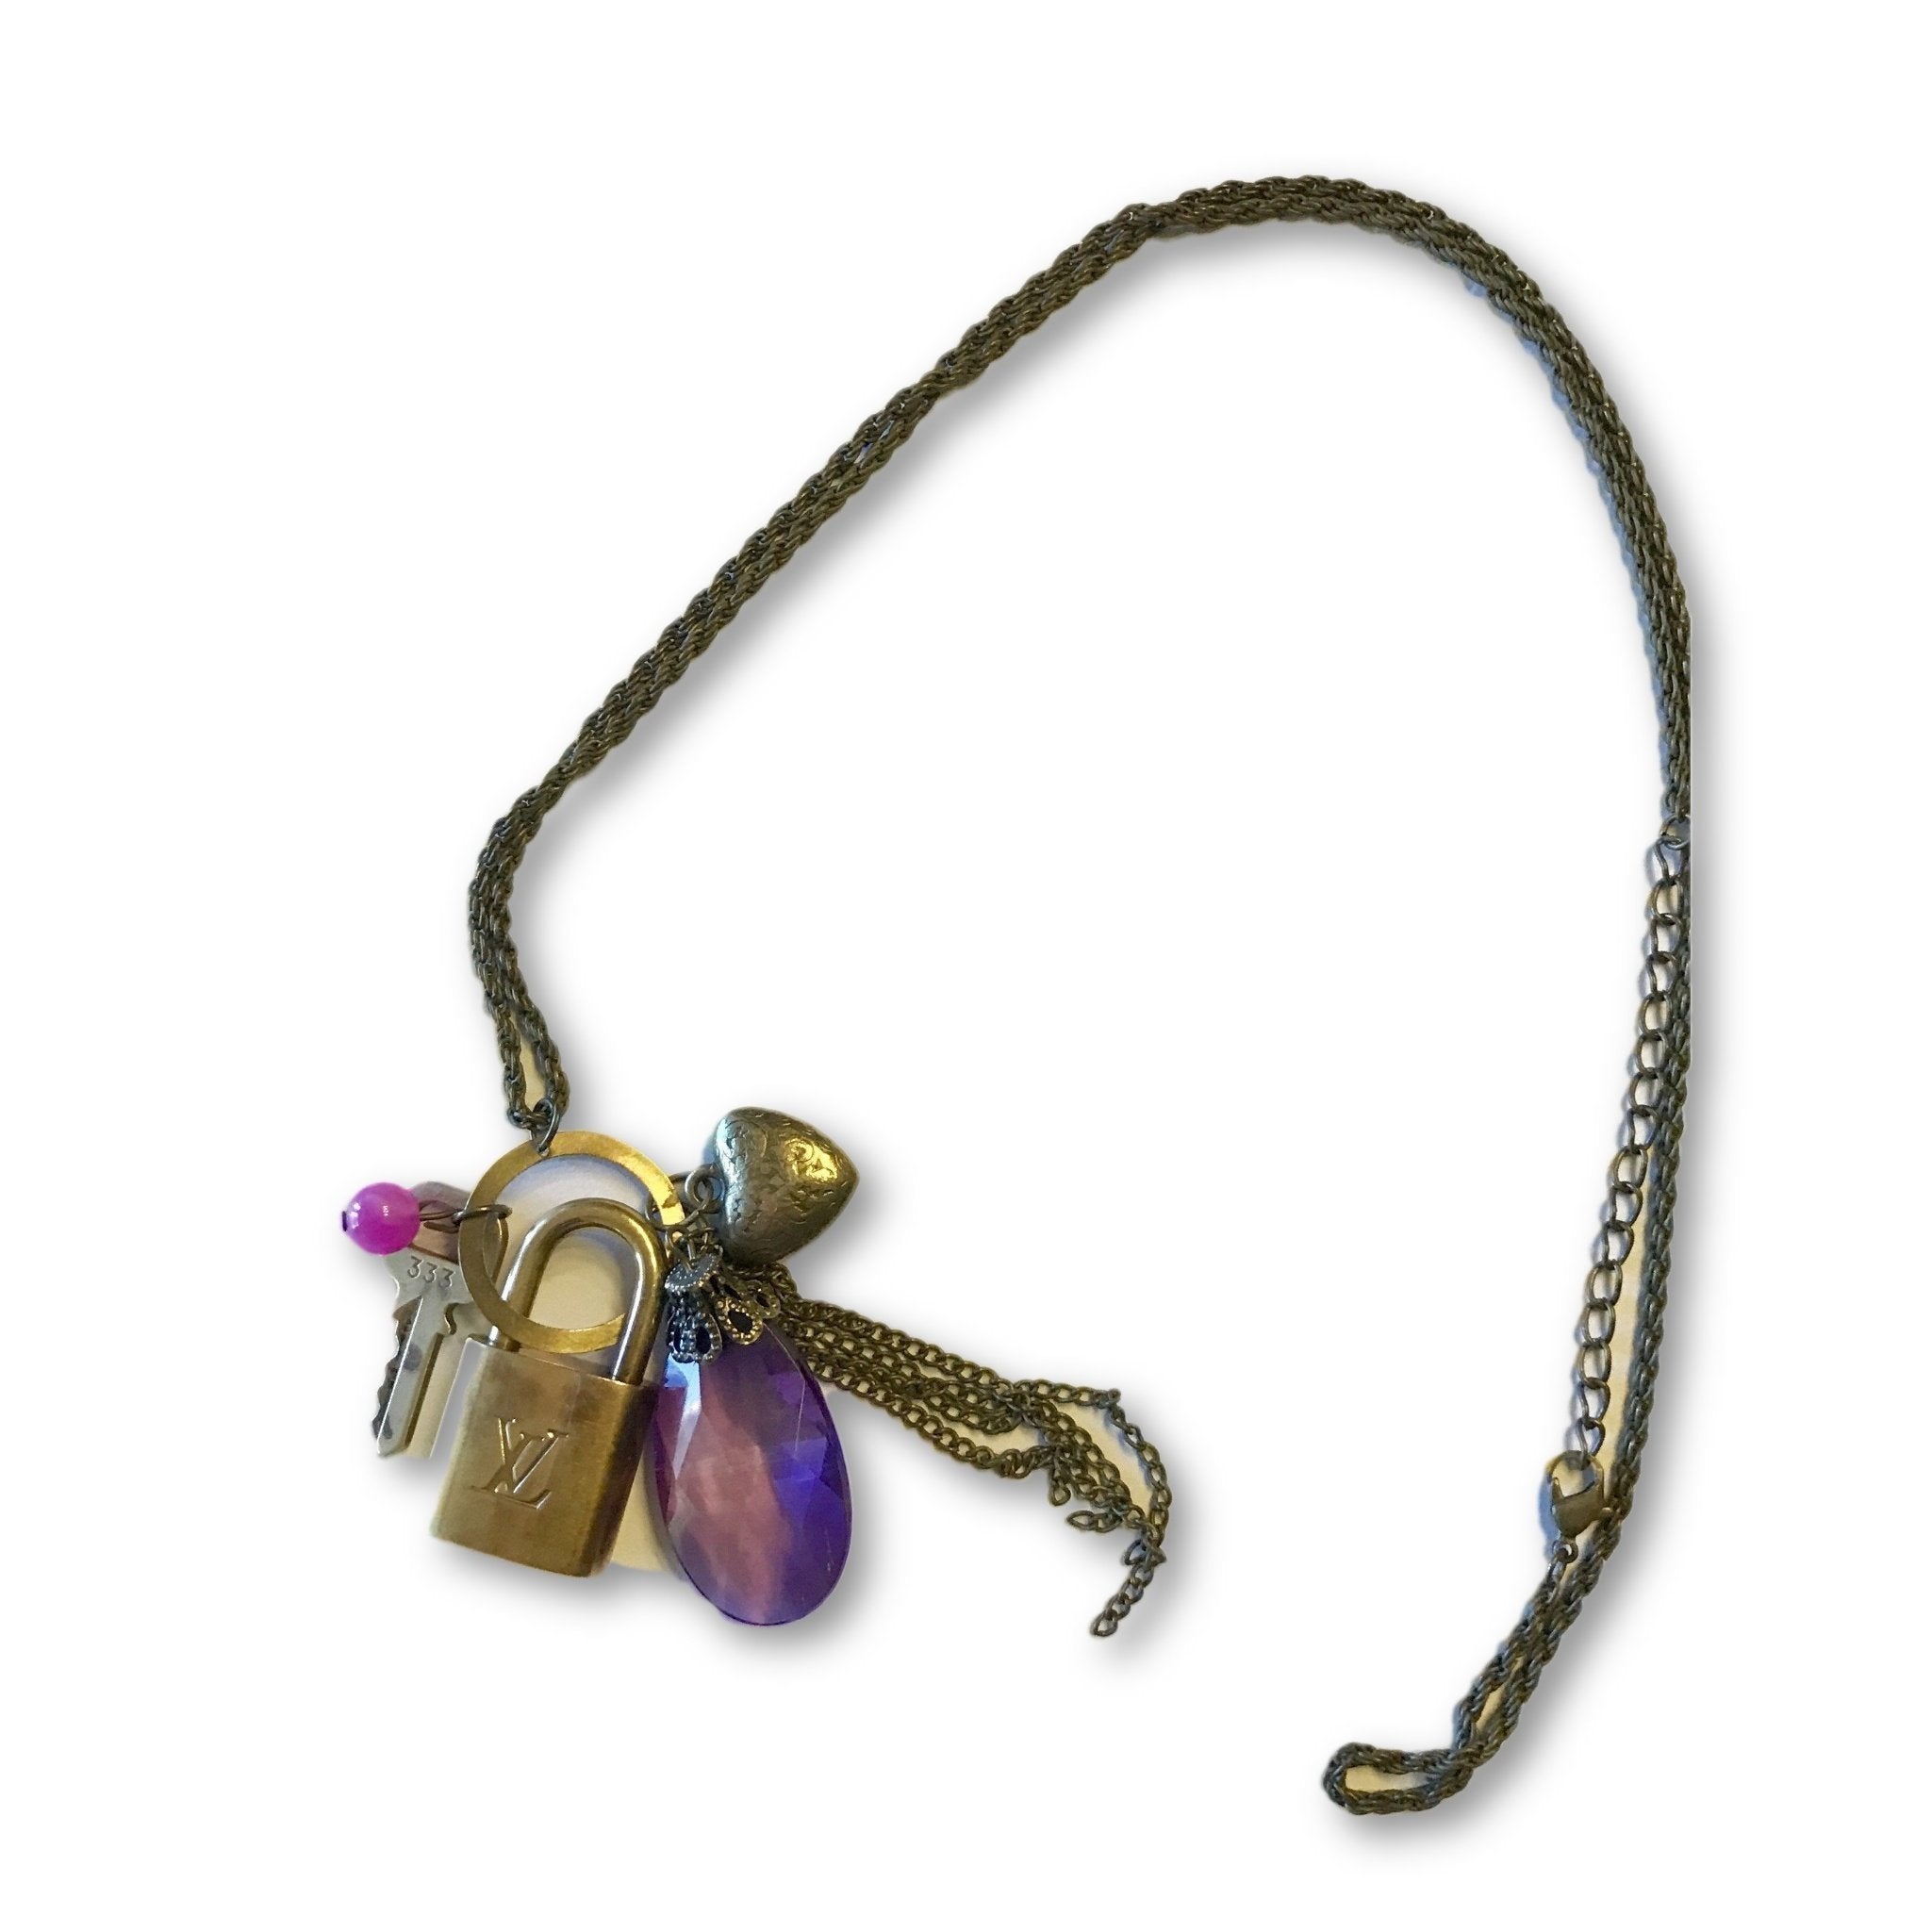 Louis Vuitton Lock & Key Charm Necklace